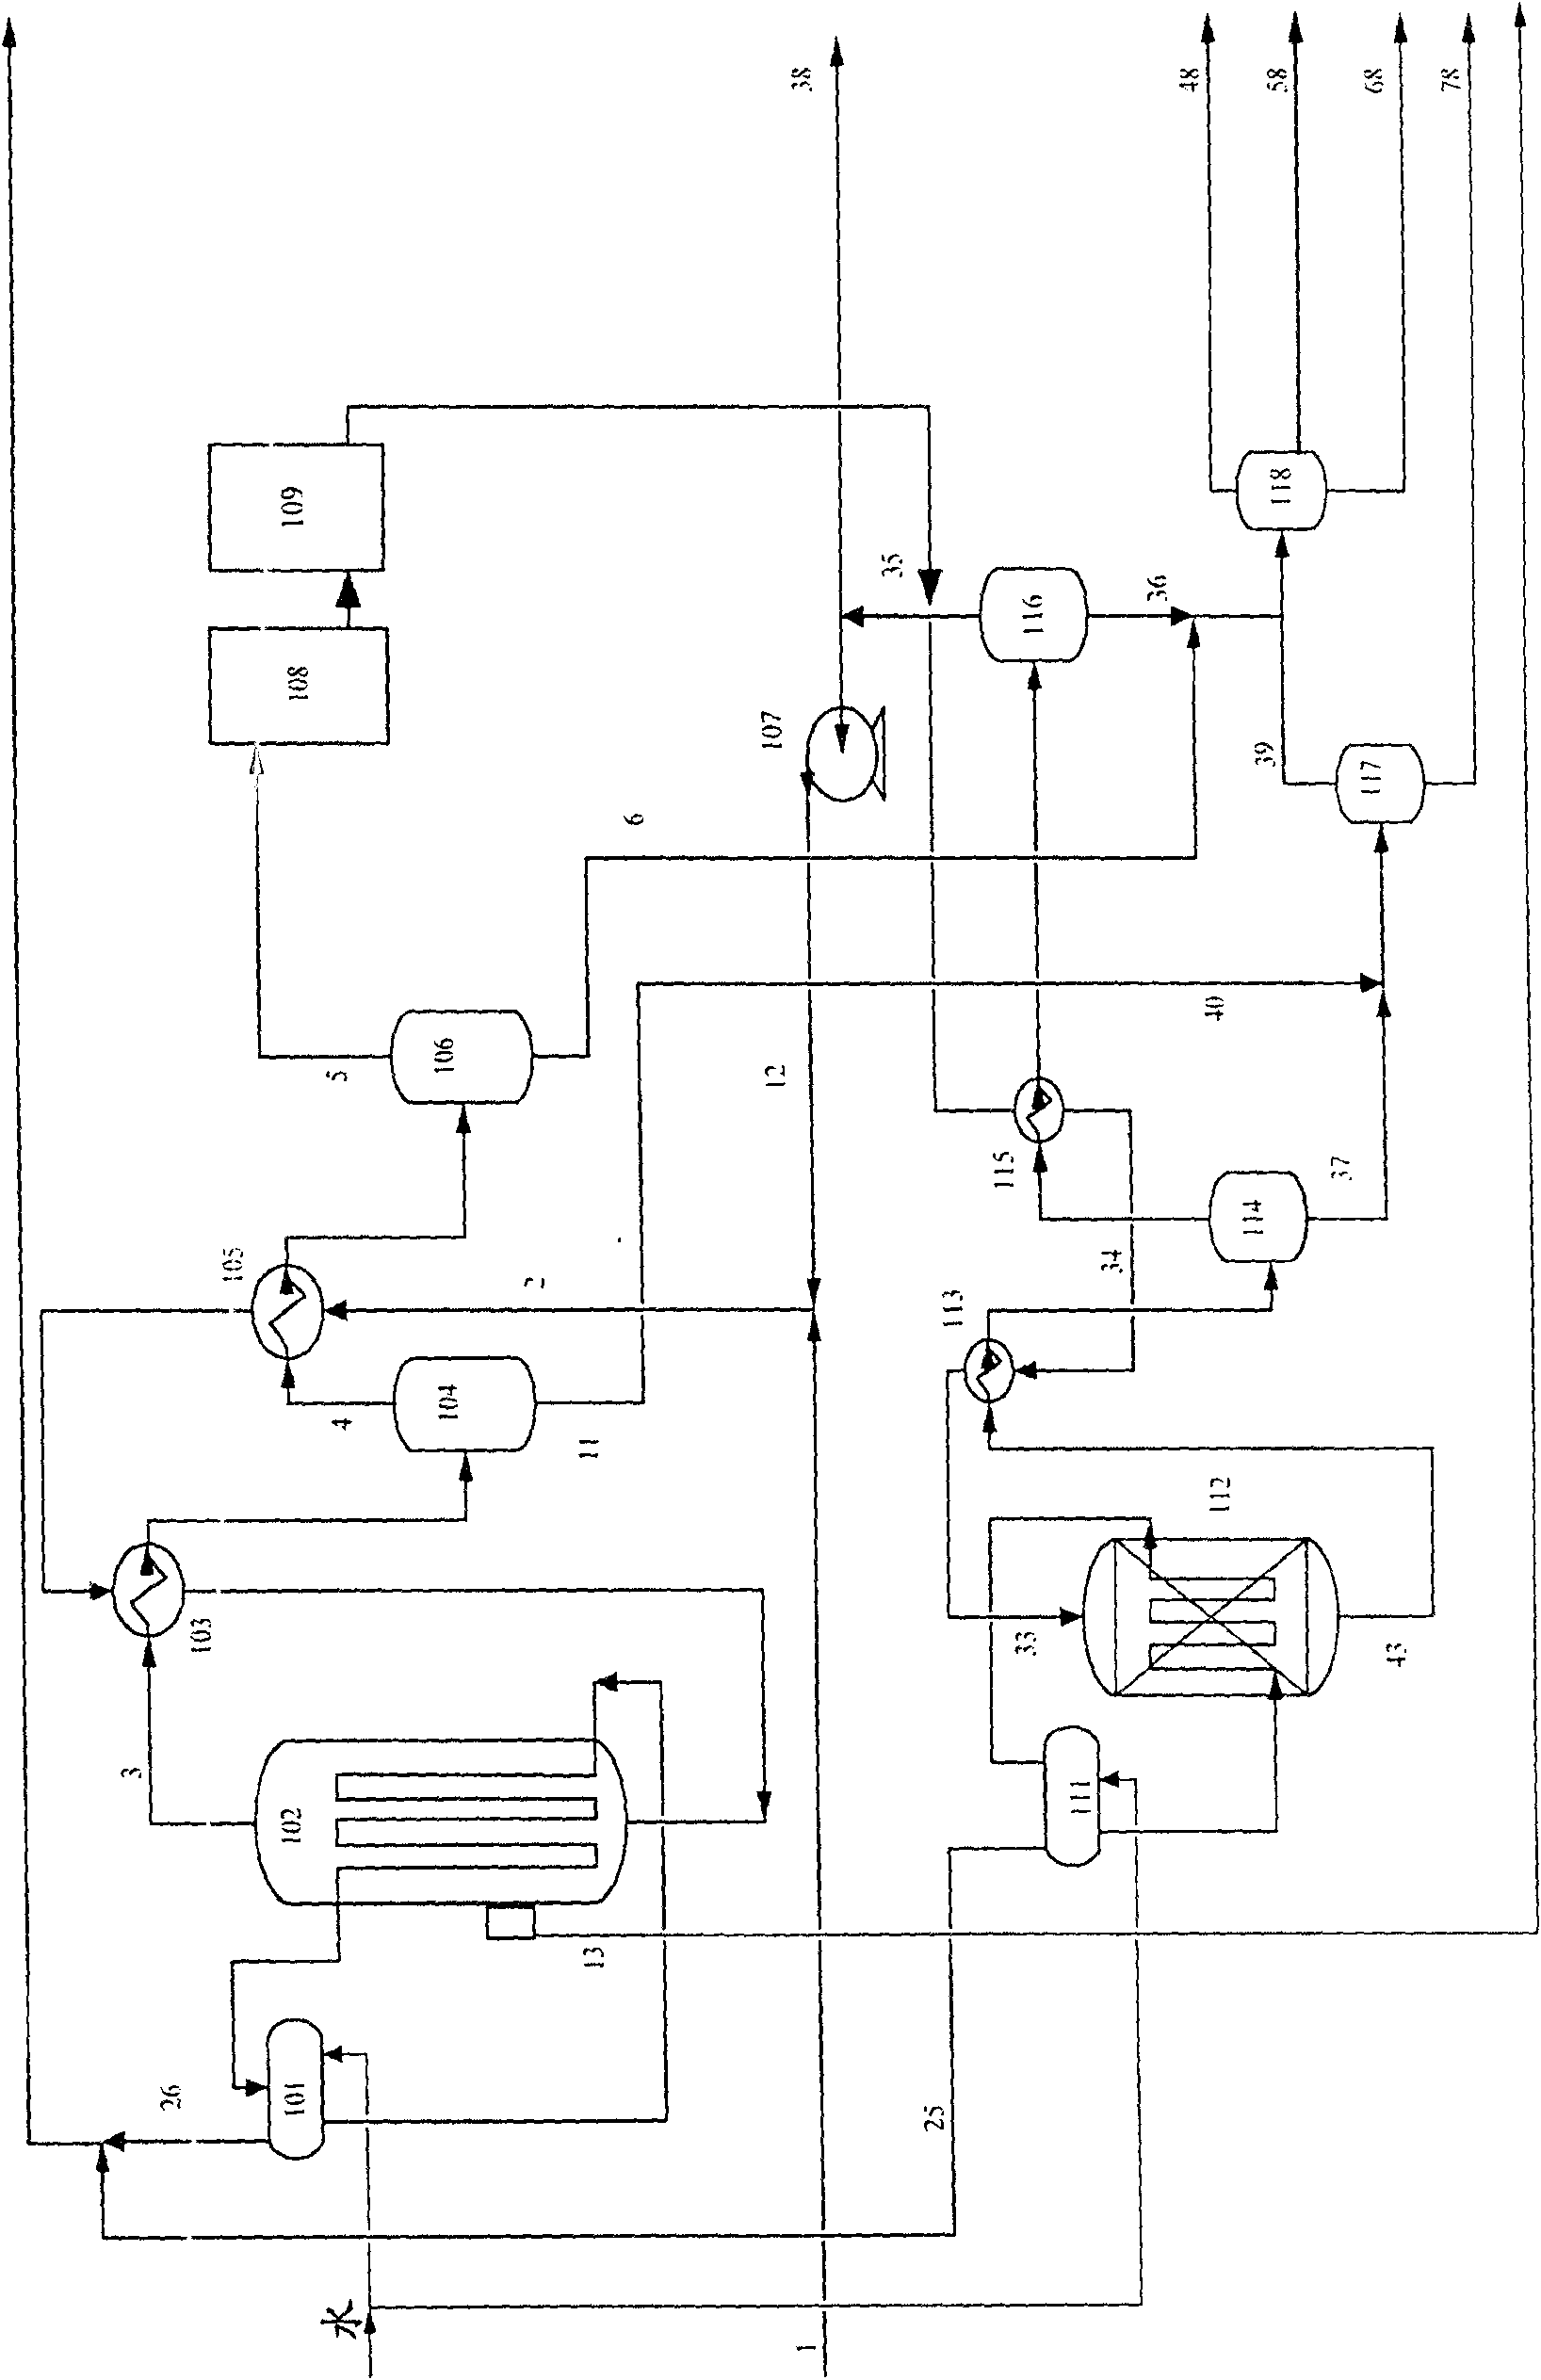 Fischer-Tropsch synthesis method